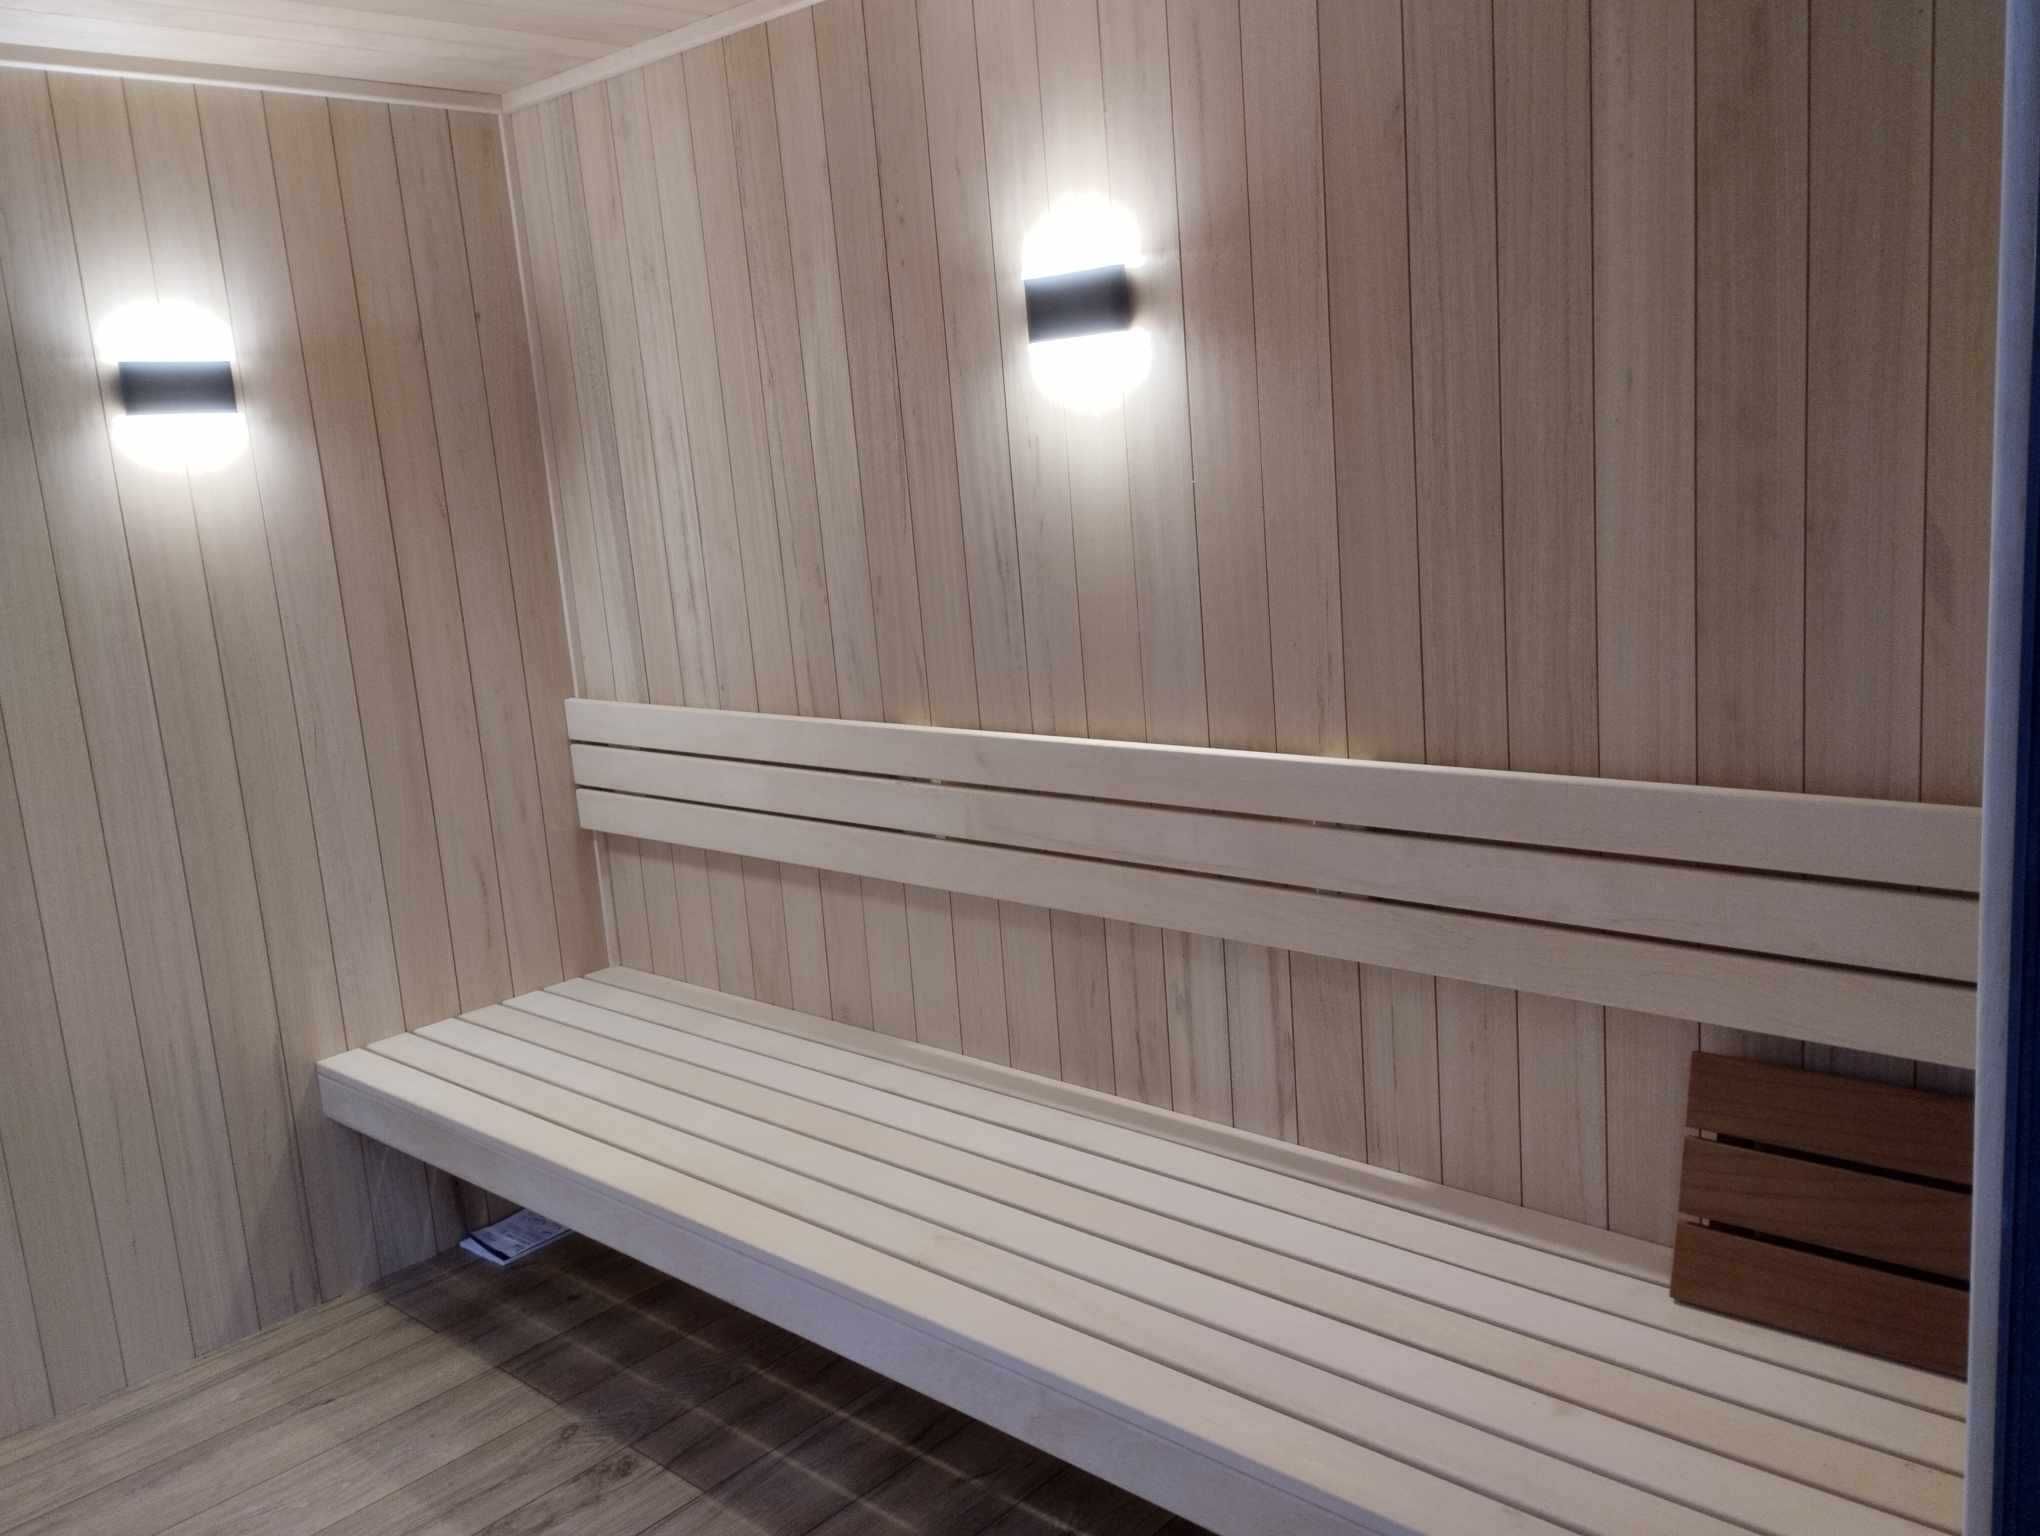 Sauna ogrodowa wielofunkcyjna z pomieszczeniem relaksu. Domek saunowy